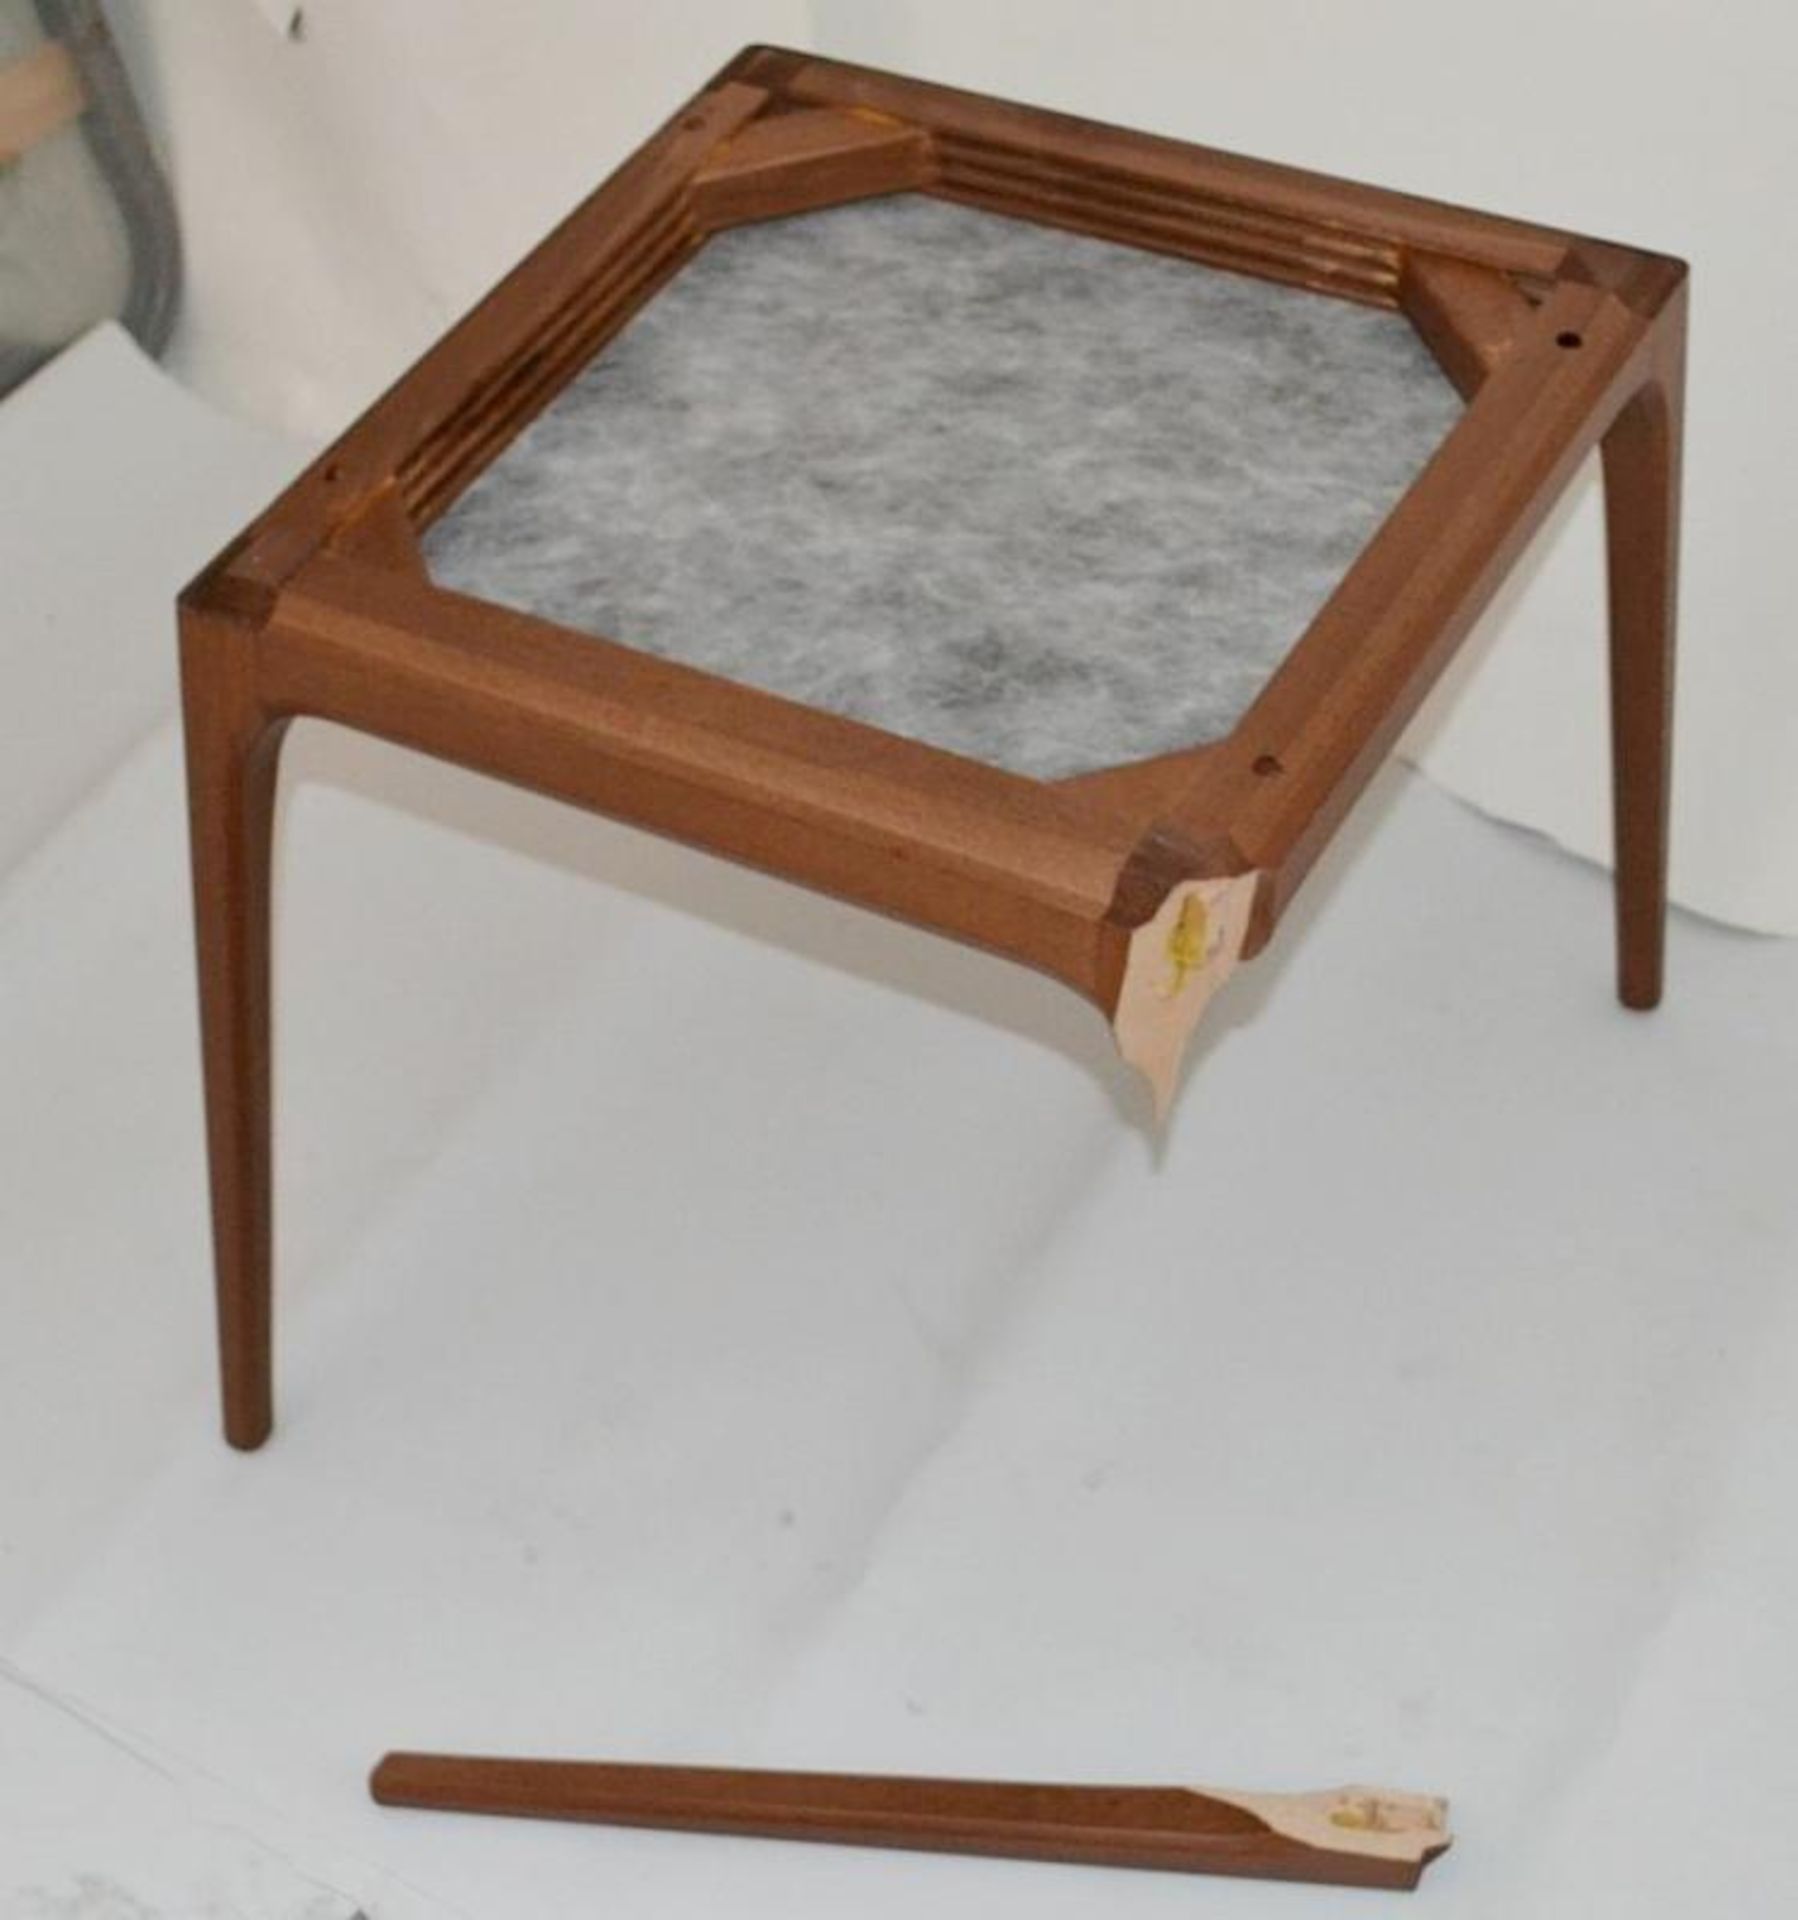 2 x CATTELAN Arcadia Chair Frames D43.5 x W45 x H45cm - Please Read Description - Ref: 4583558/54984 - Image 6 of 12